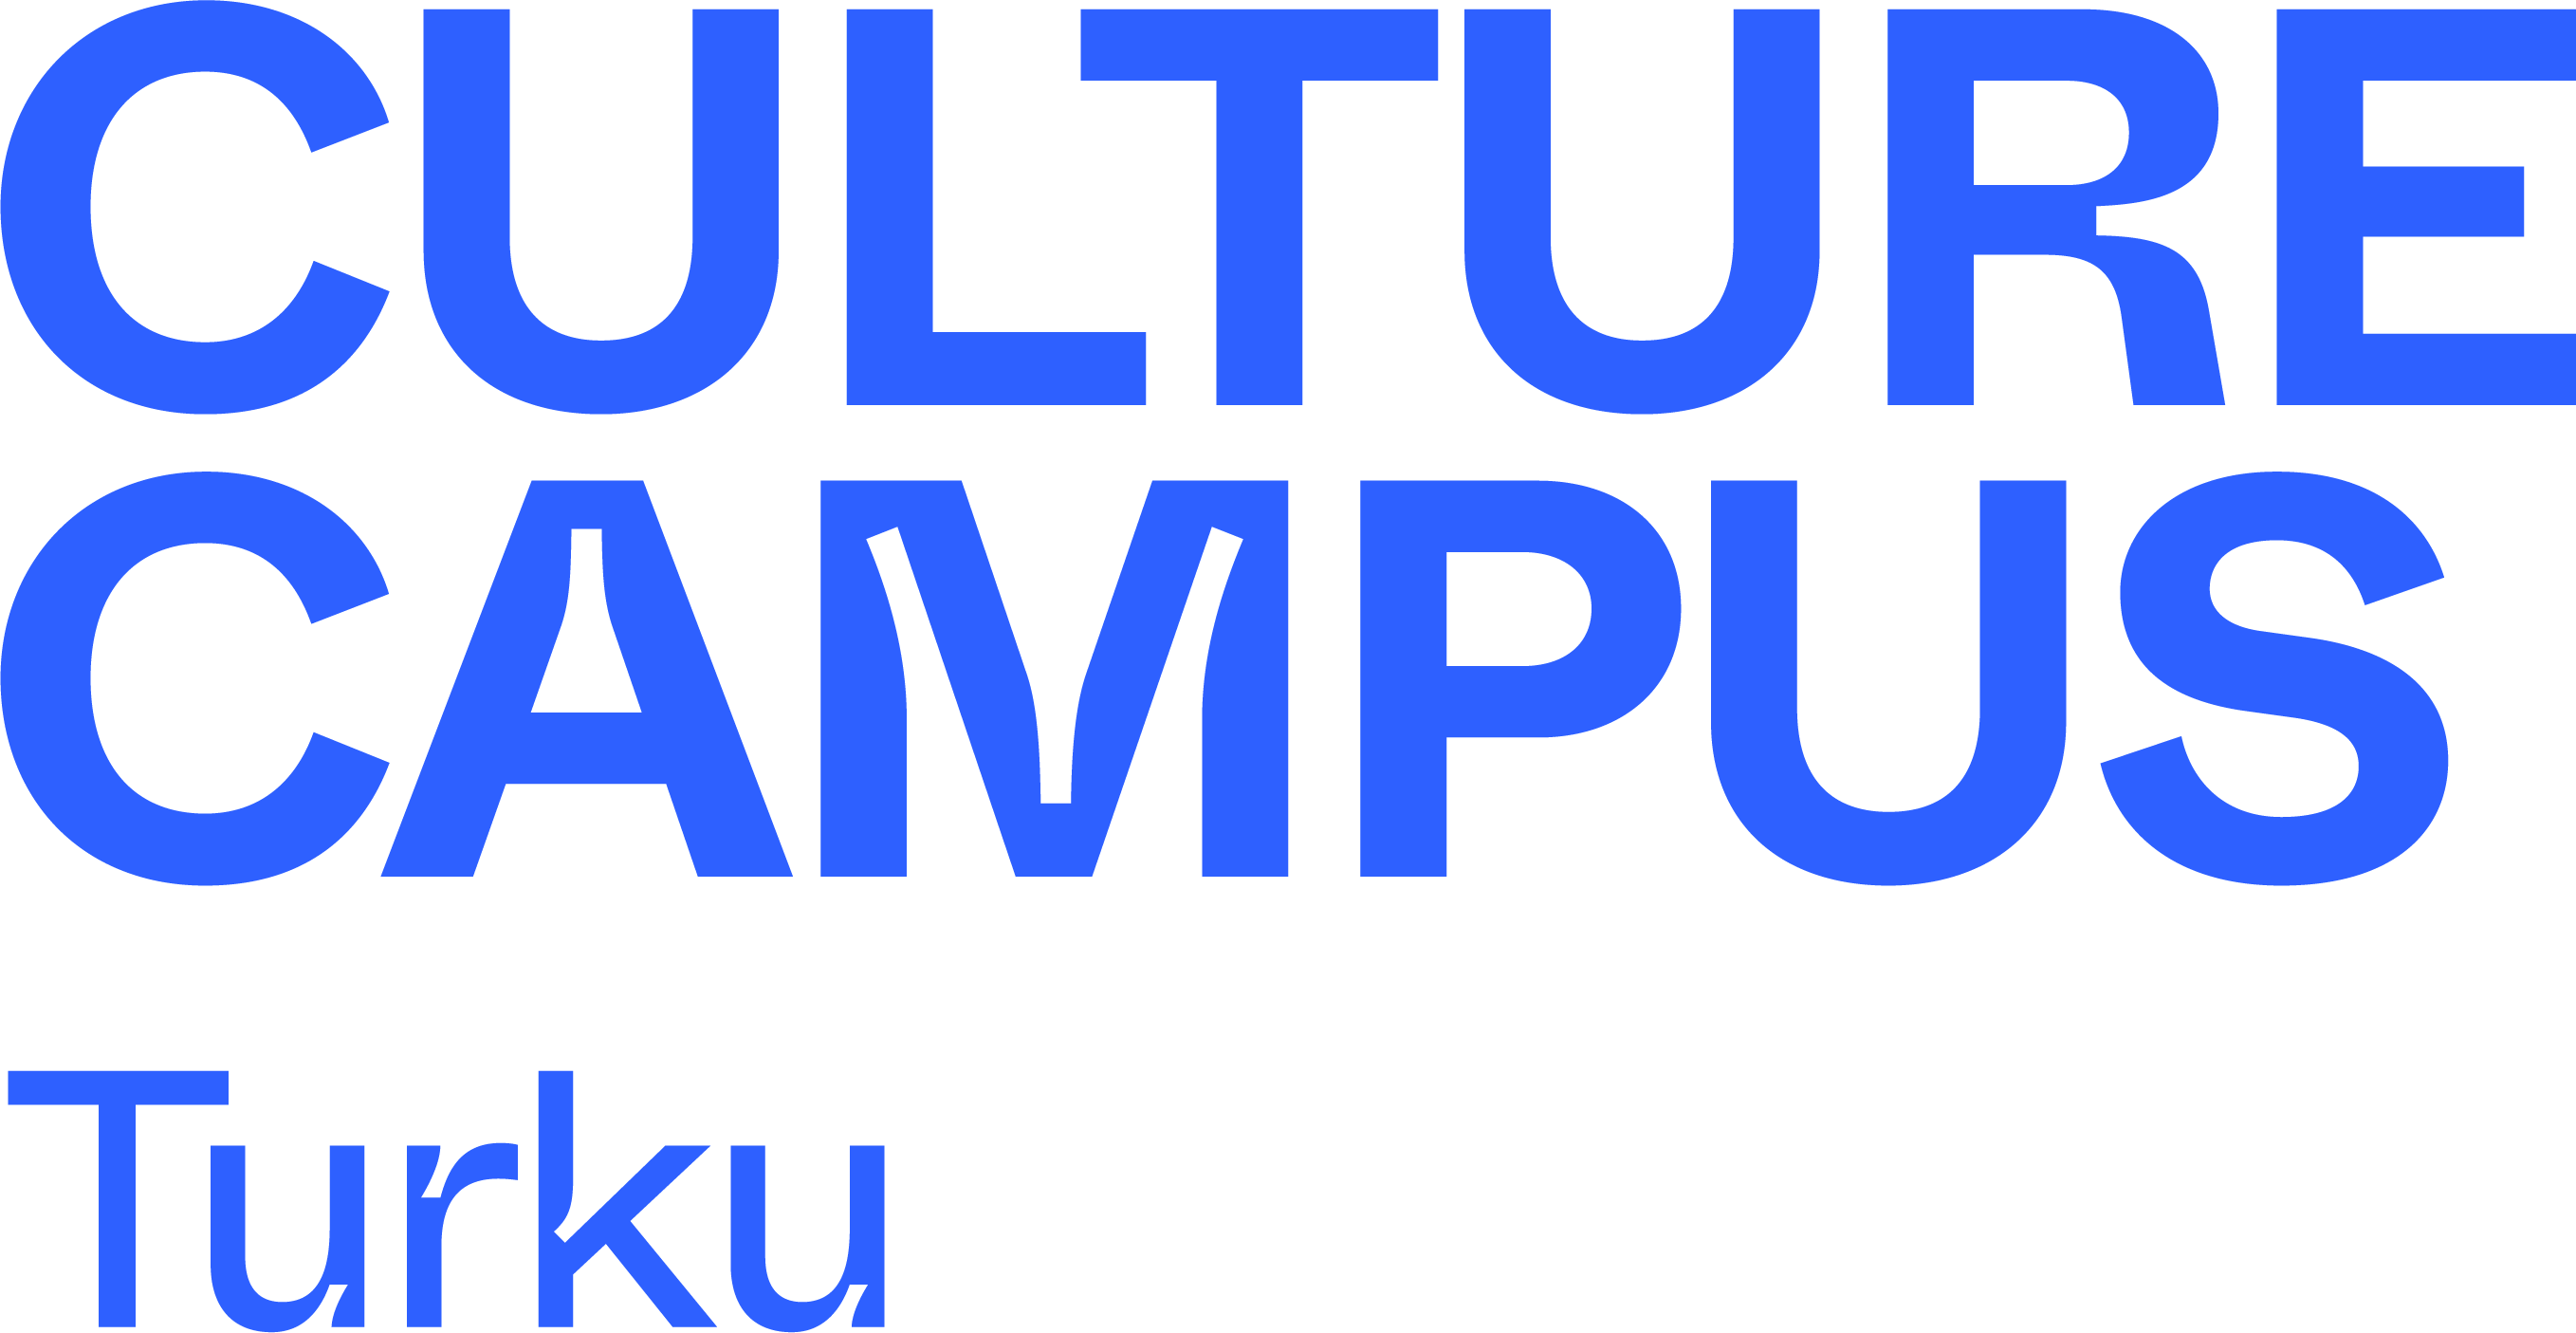 Culture Campus Turku